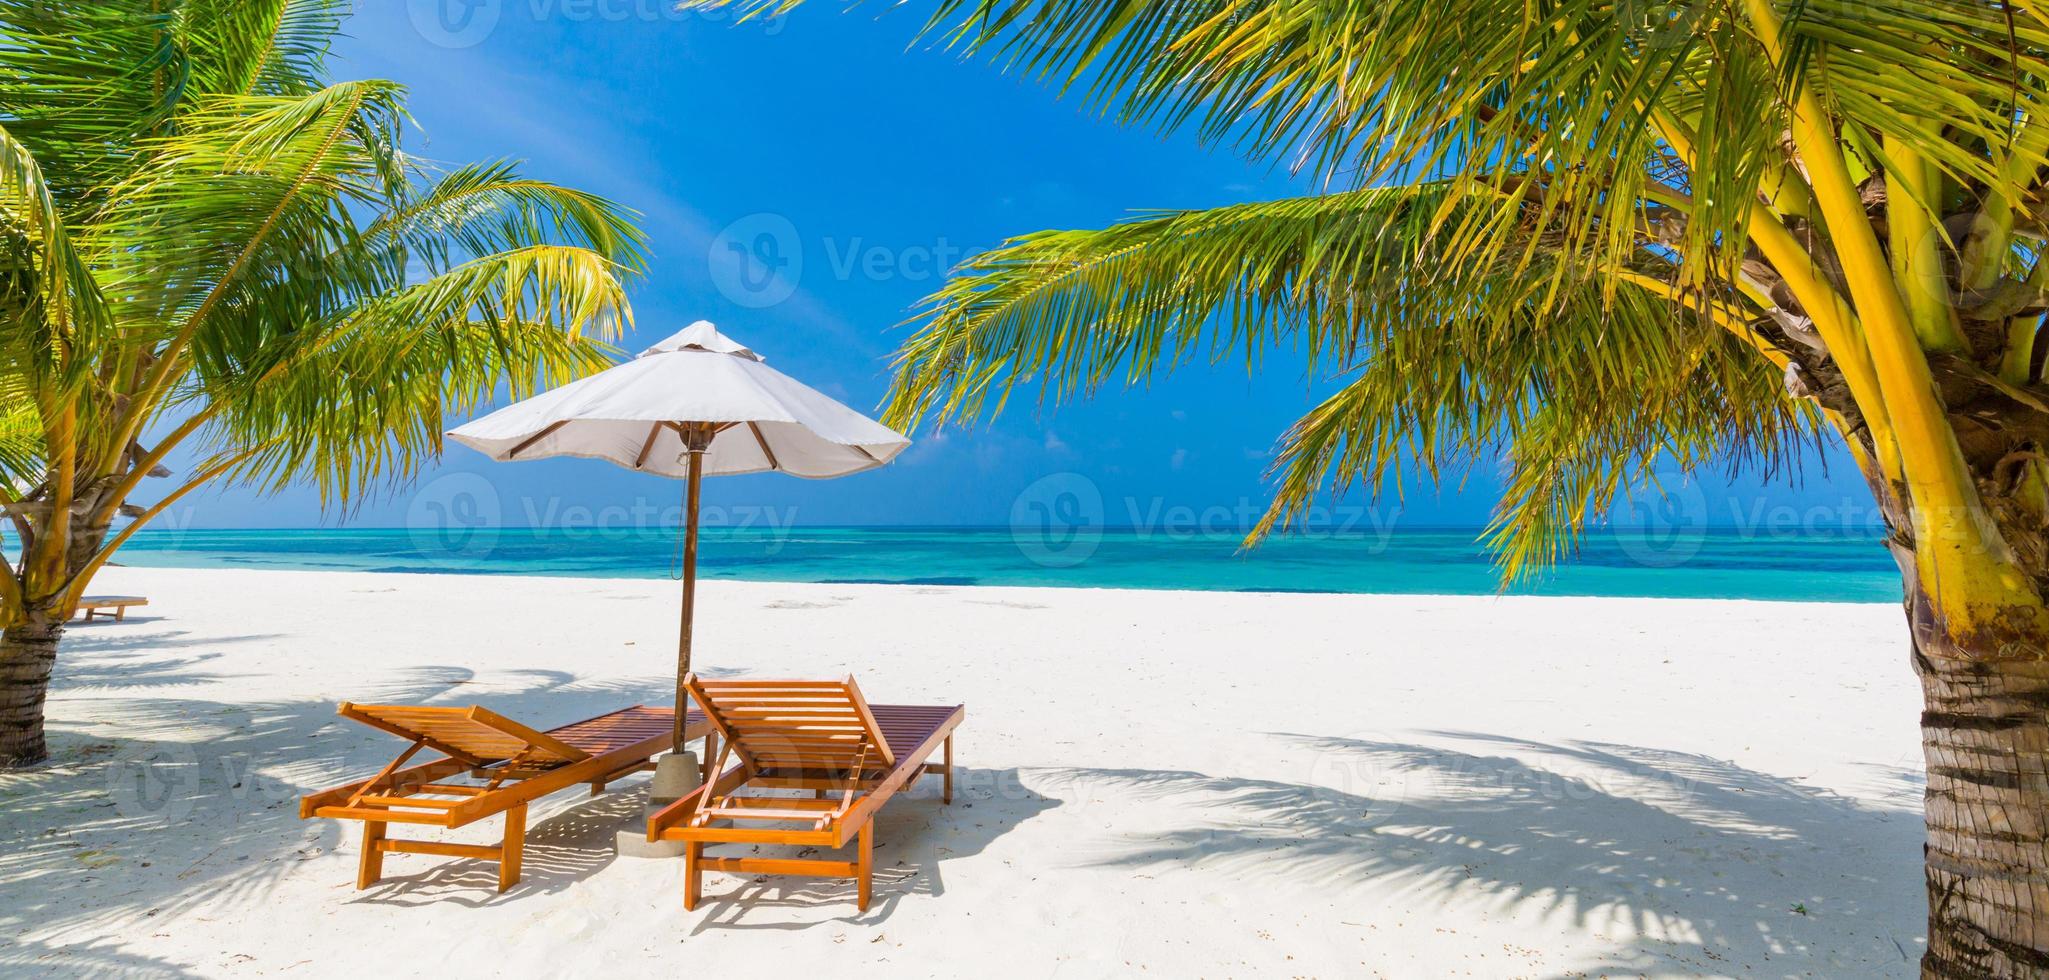 bellissimo scenario dell'isola tropicale, due lettini, lettini, ombrellone sotto la palma. sabbia bianca, vista mare con orizzonte, cielo azzurro idilliaco, calma e relax. hotel ispiratore del resort sulla spiaggia foto